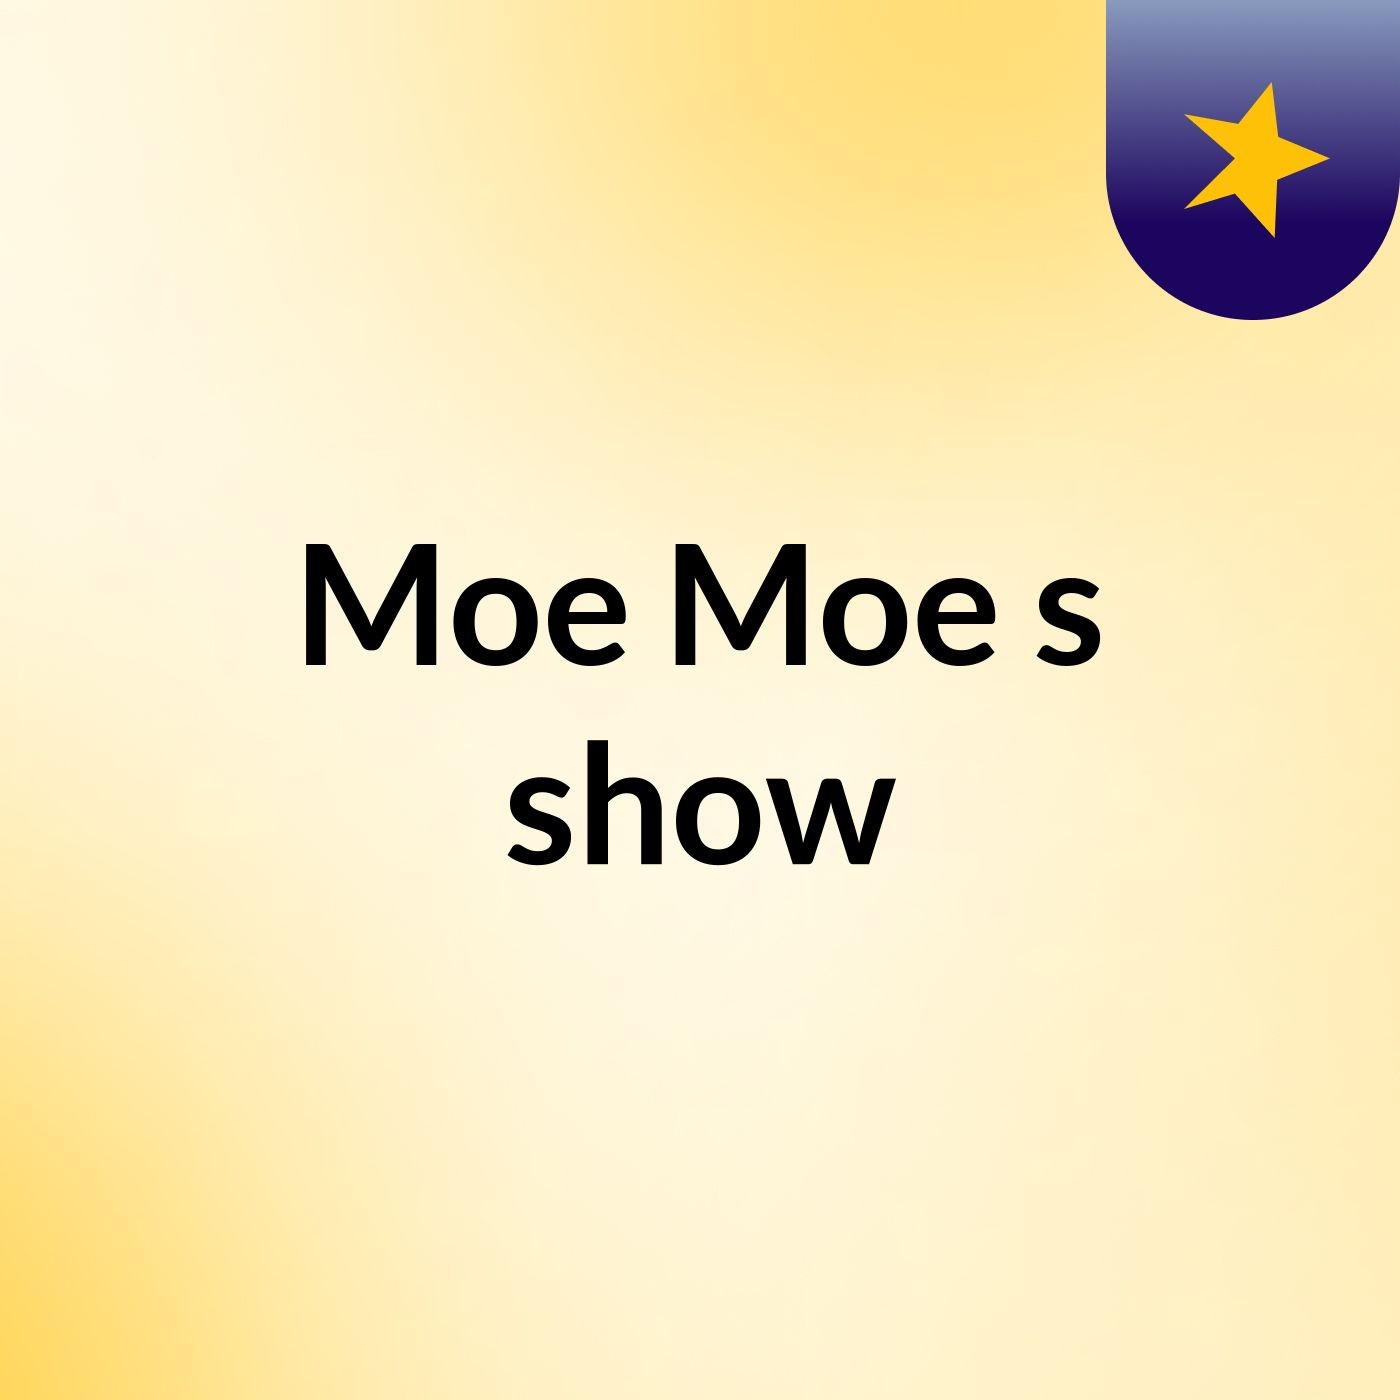 Moe Moe's show